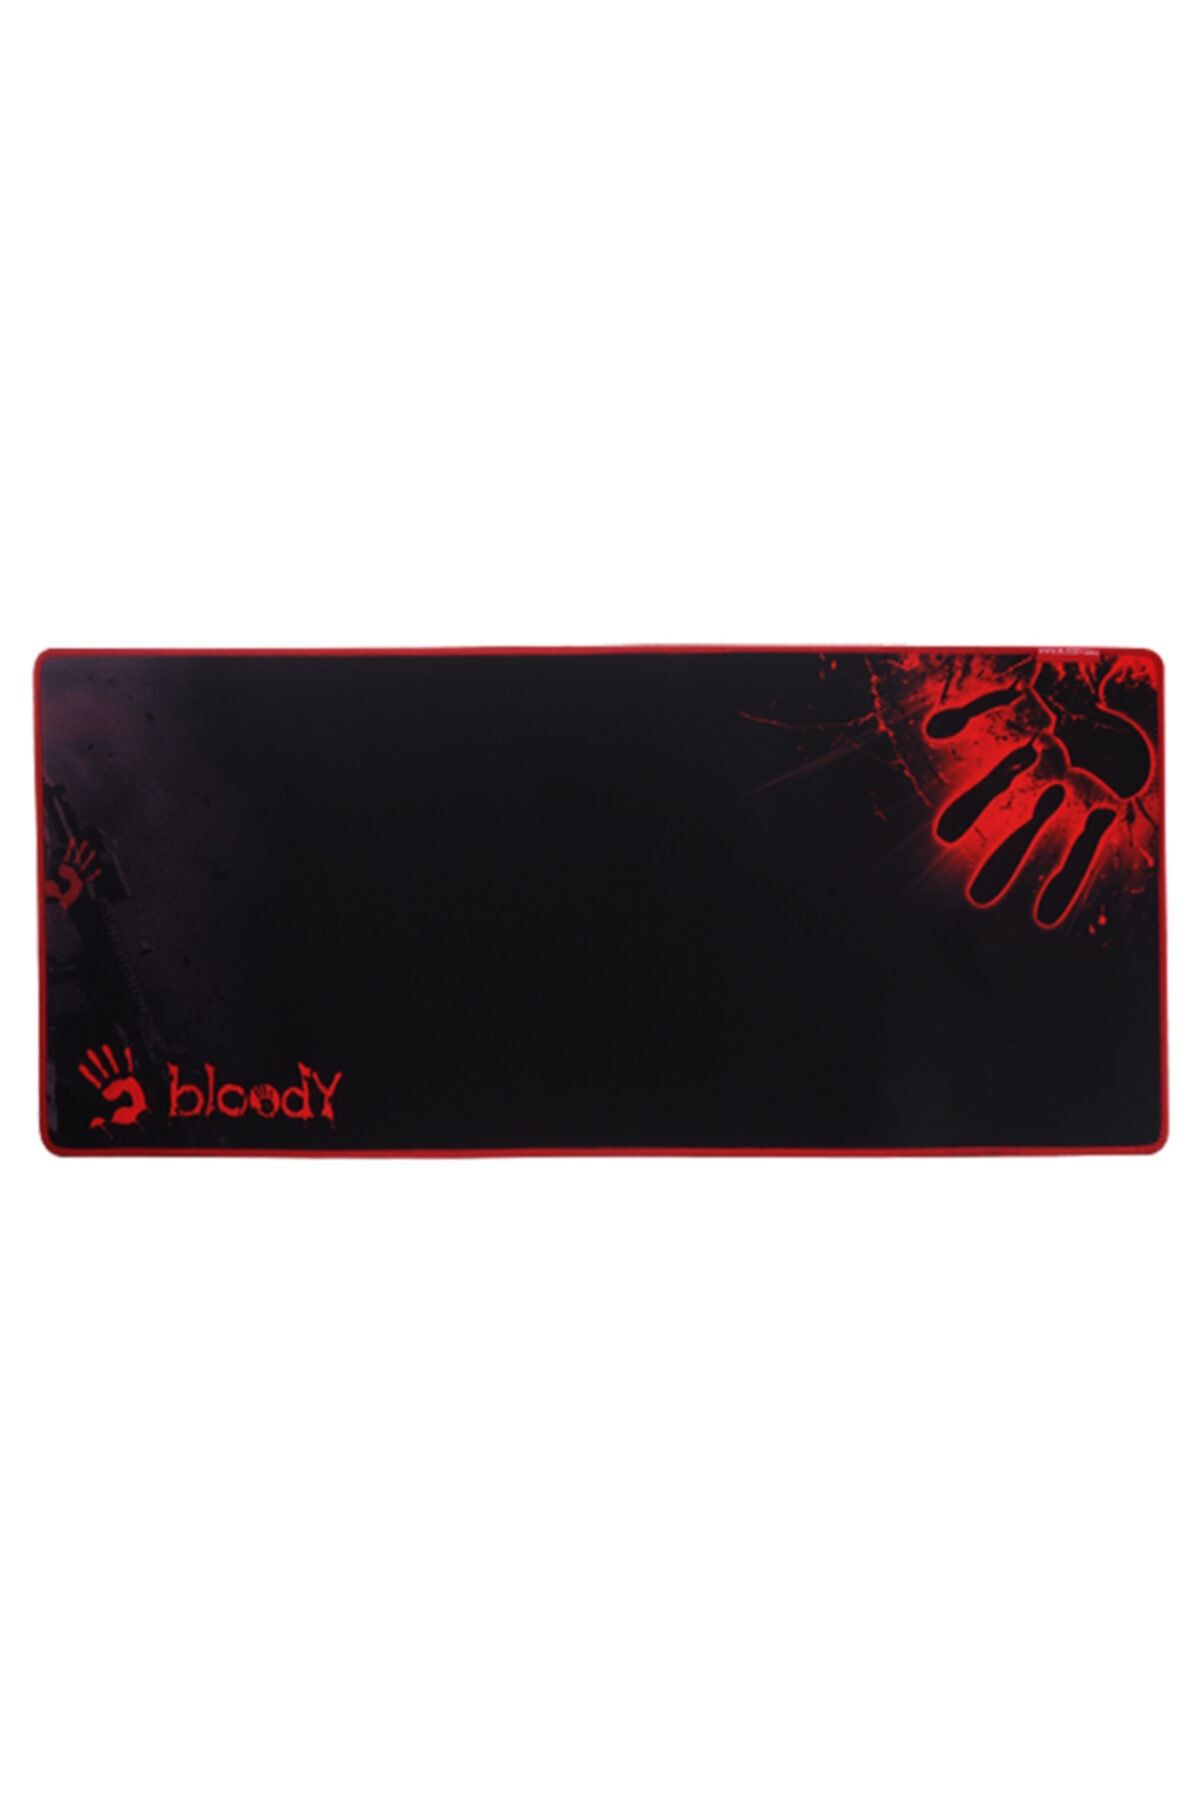 versatile Gaming Oyuncu Xxl Mousepad Bloody 90*40 cm